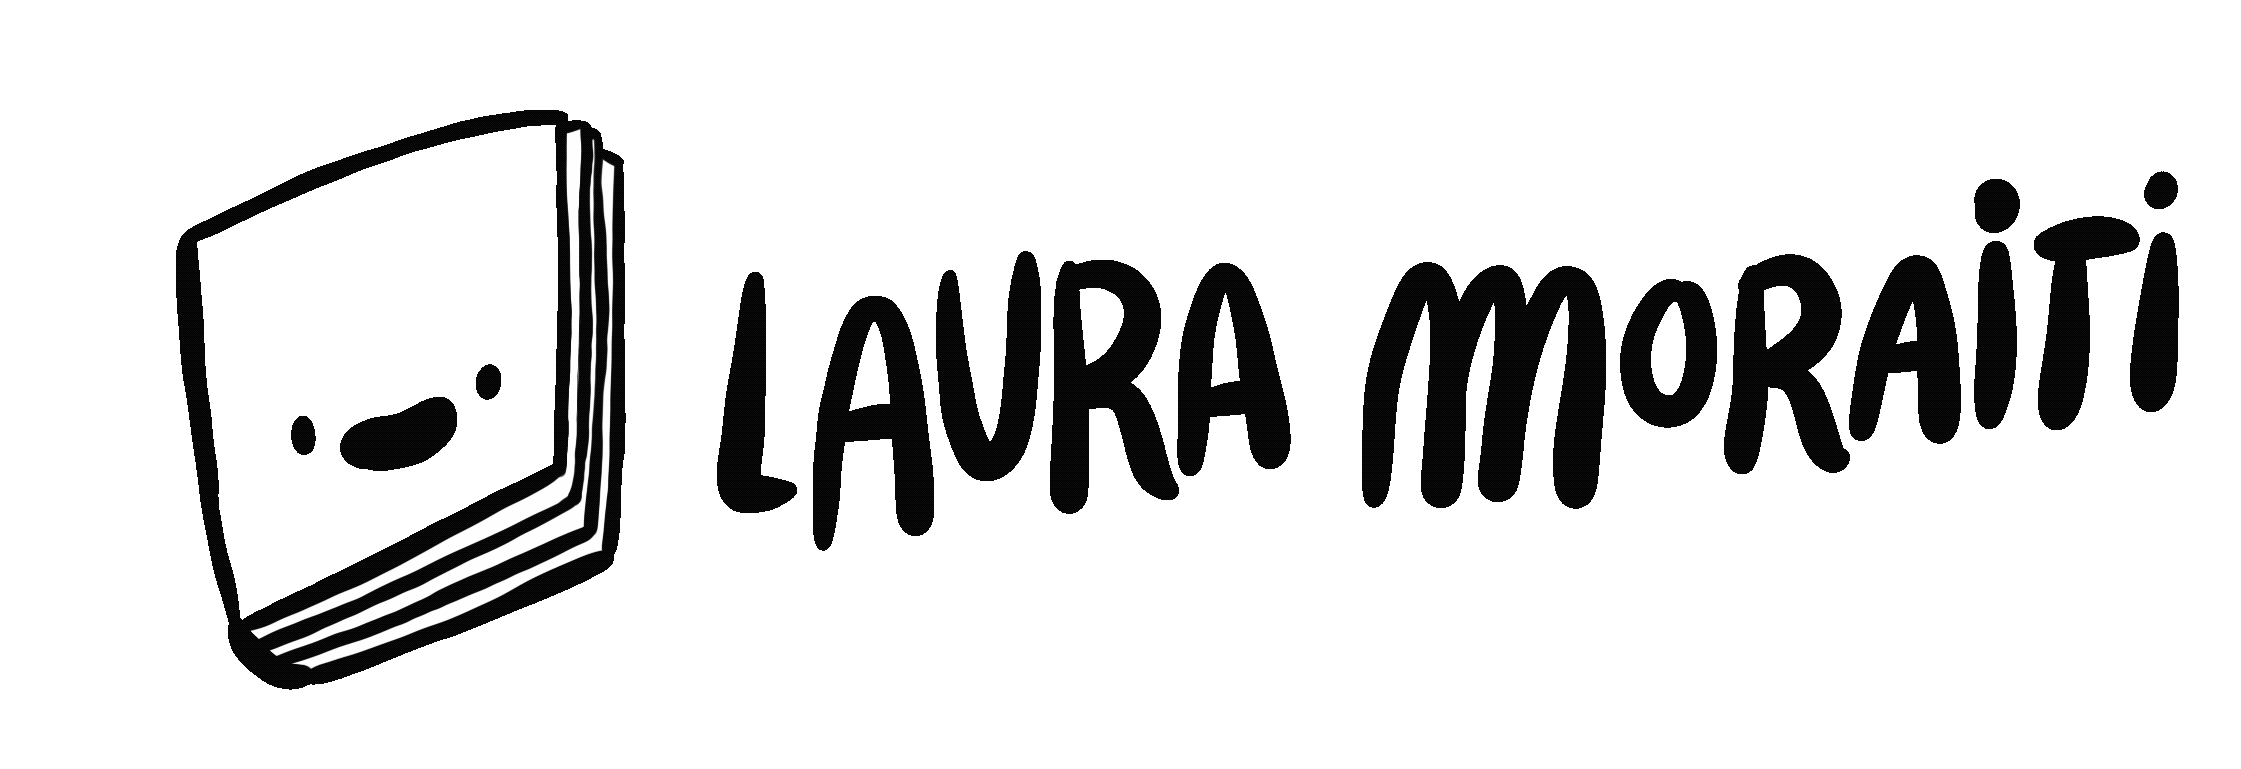 Laura Moraiti